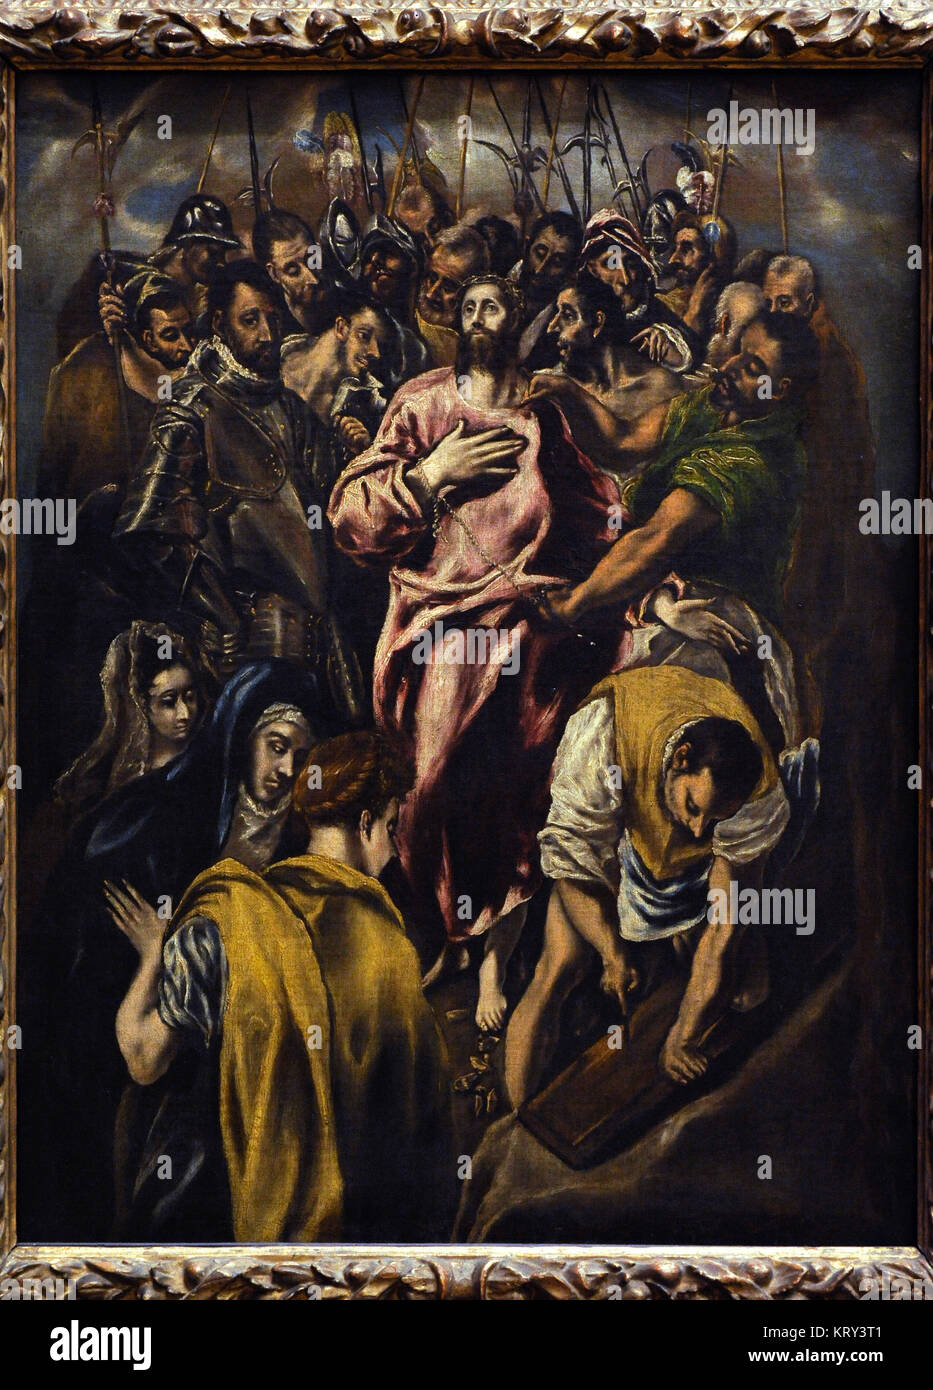 El Greco (1541-1614). Pintor cretense. Jesús Cristo despojado de sus vestiduras. Galería Nacional. Oslo. Noruega. Foto de stock